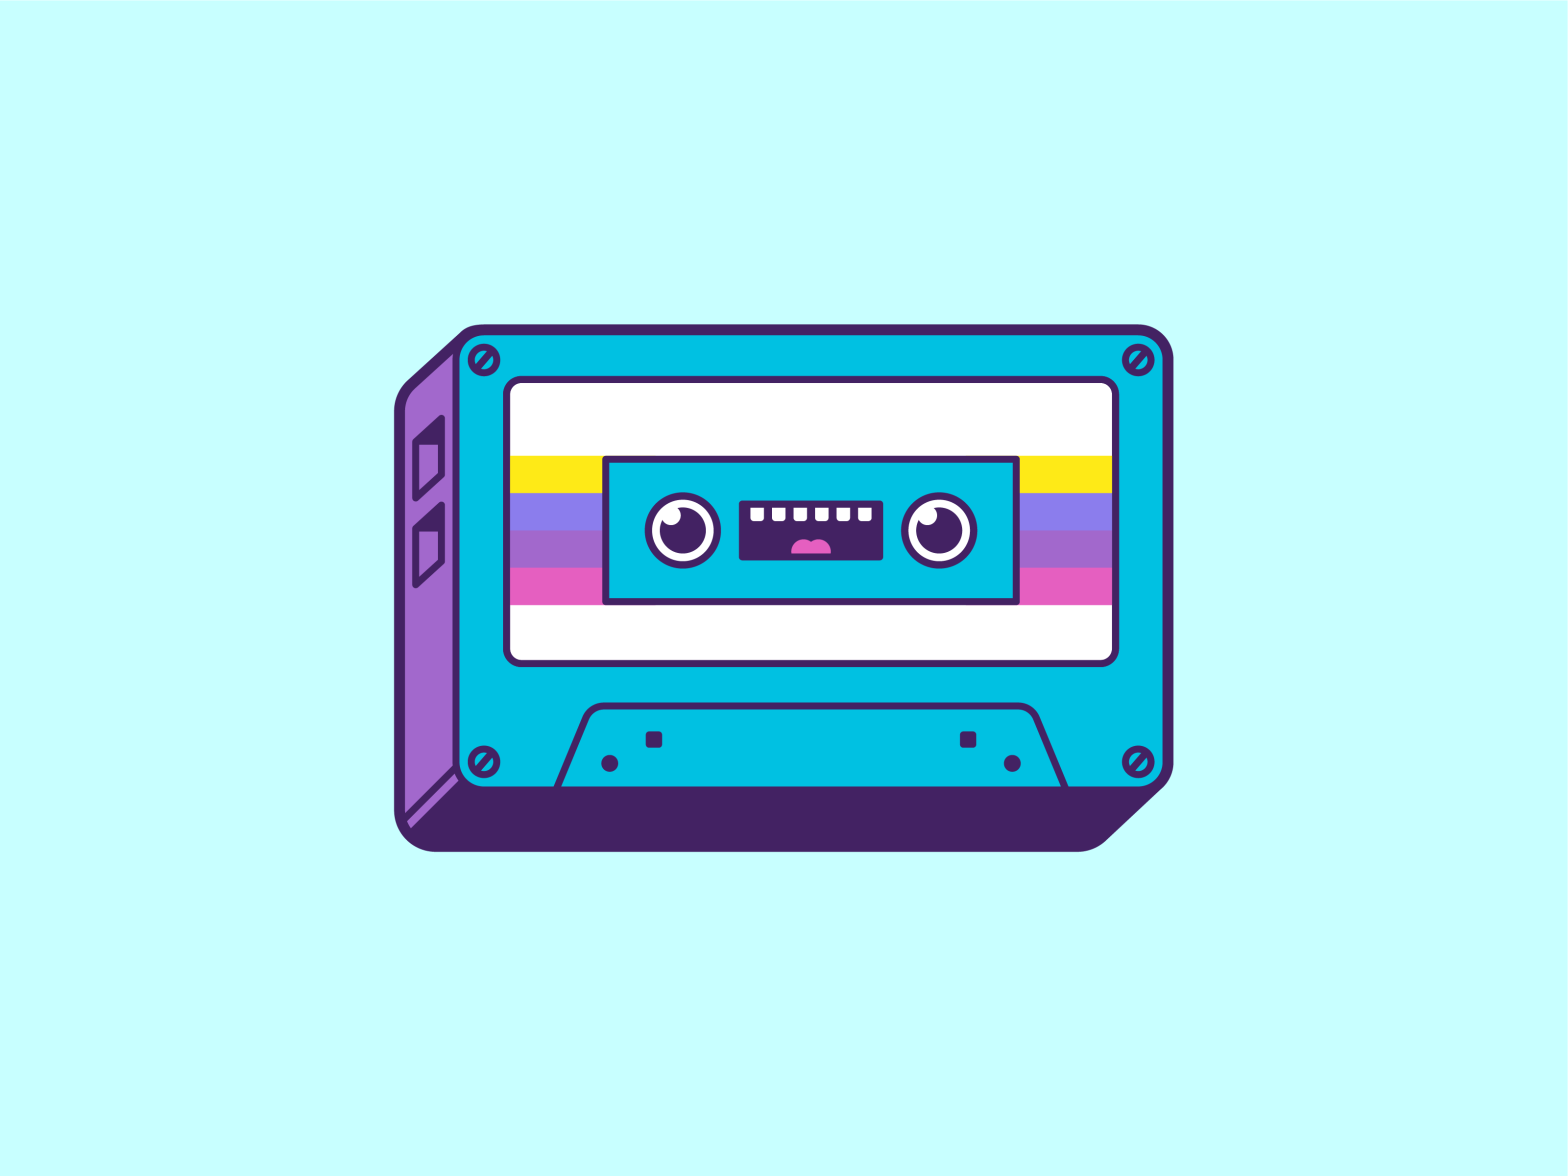 Happy cassette by Niko Salkola on Dribbble